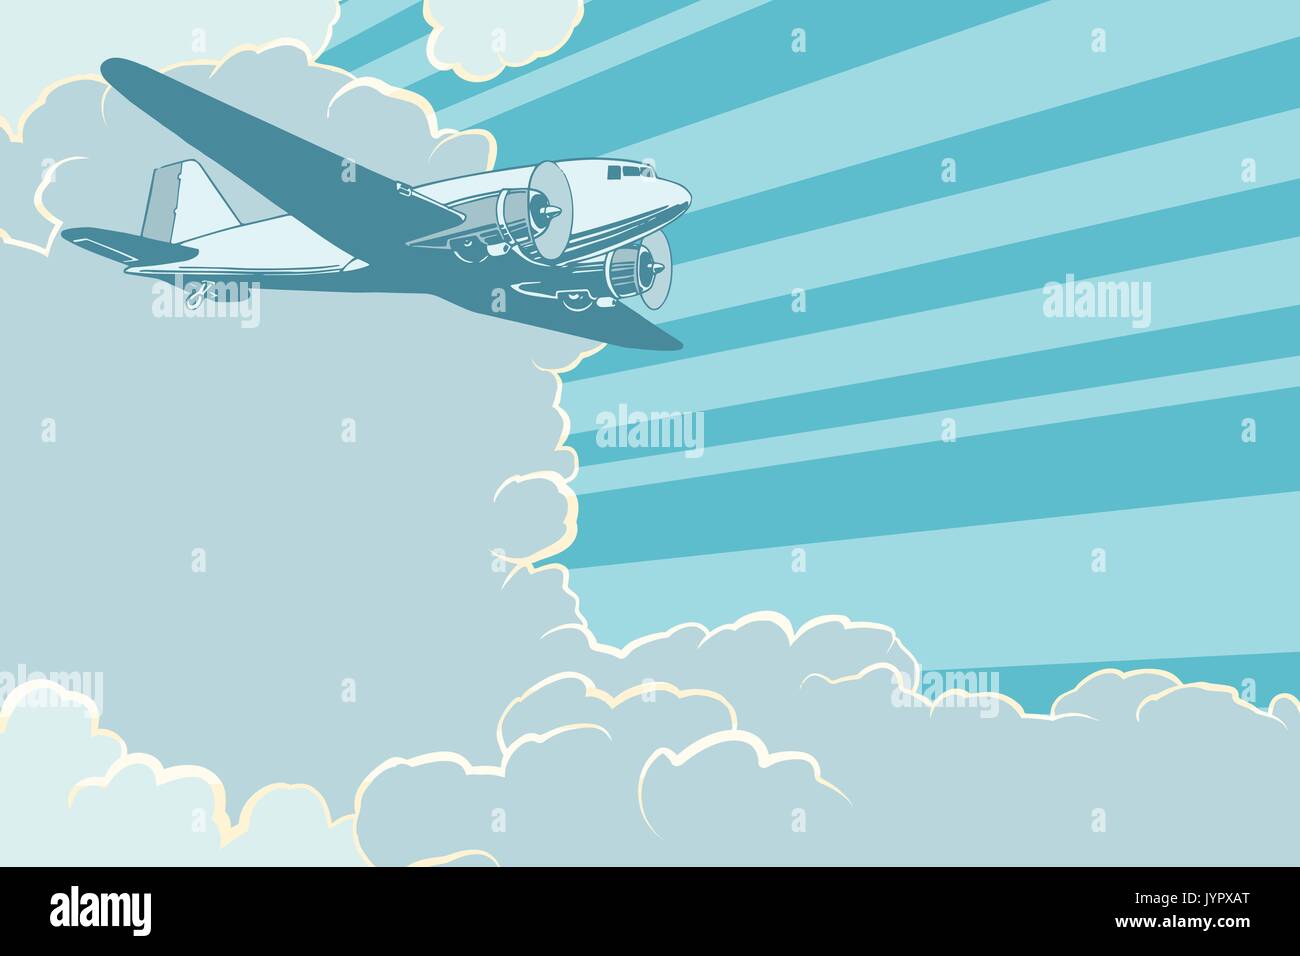 Der Luftverkehr ist das Fliegen in den Himmel Flugzeug, retro style. Flugzeug Luftfahrt reisen reise Tourismus Luftverkehr. Pop Art retro Vektor illustration Stock Vektor